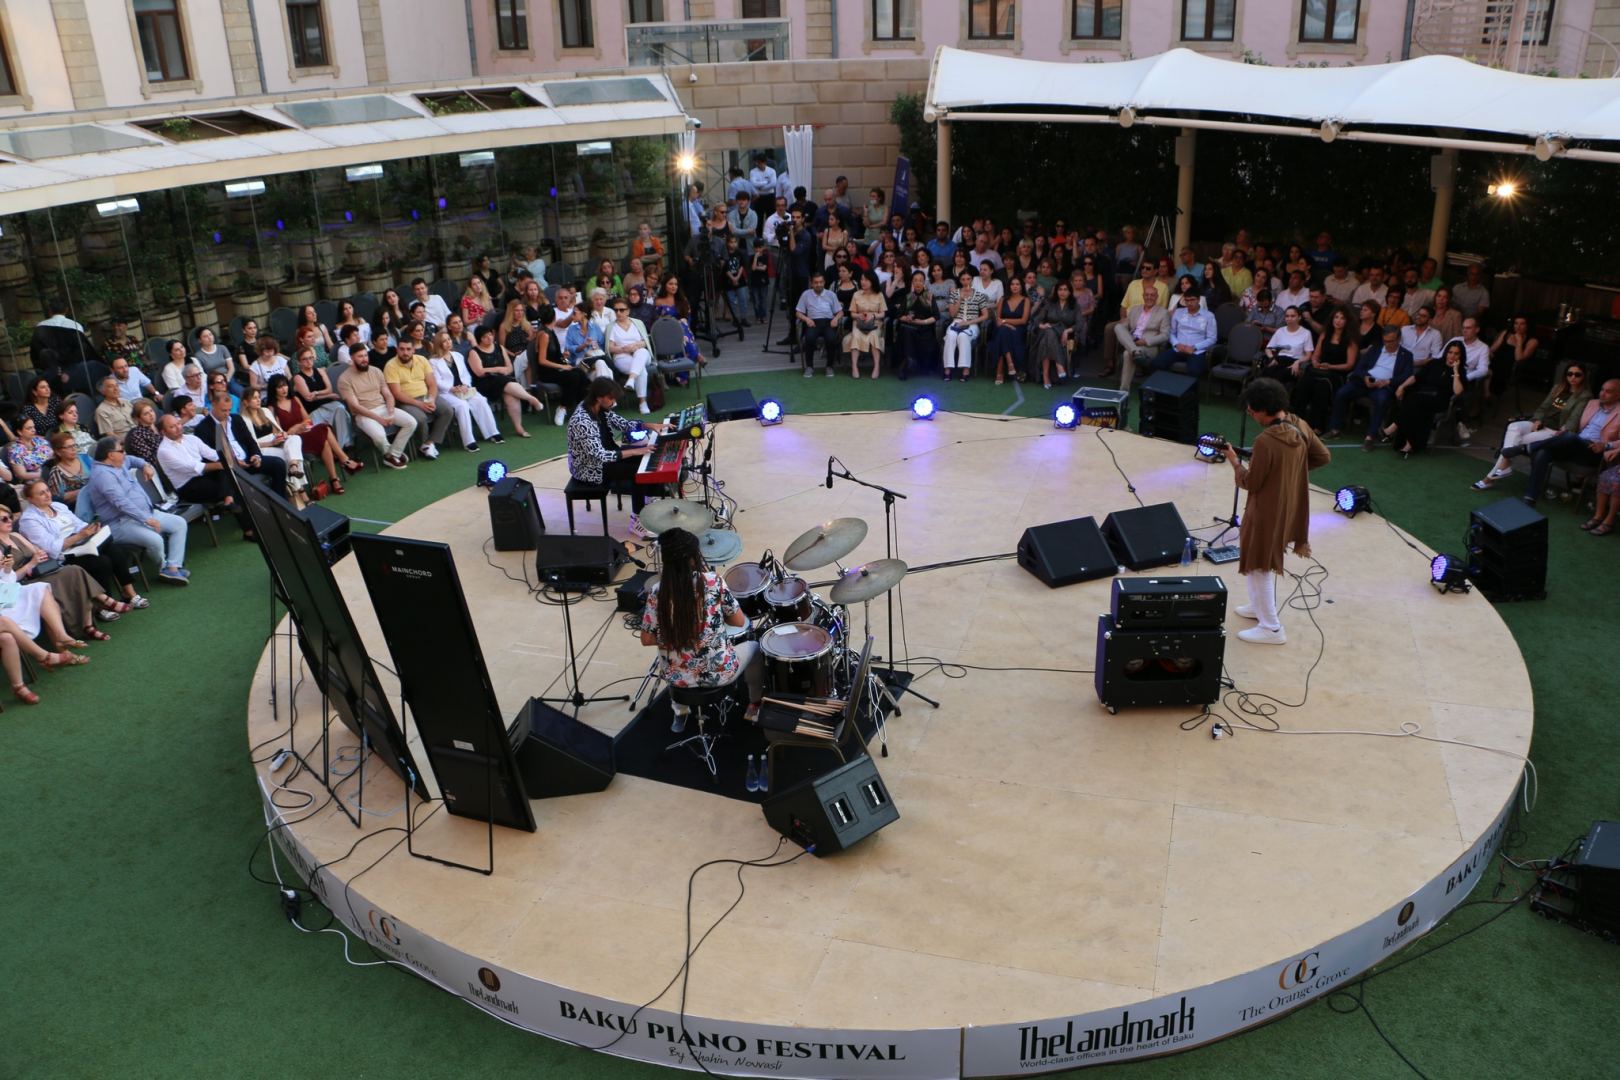 Bakı Piano Festival Braziliya virtuozlarının konserti ilə başa çatıb (FOTO/VİDEO)